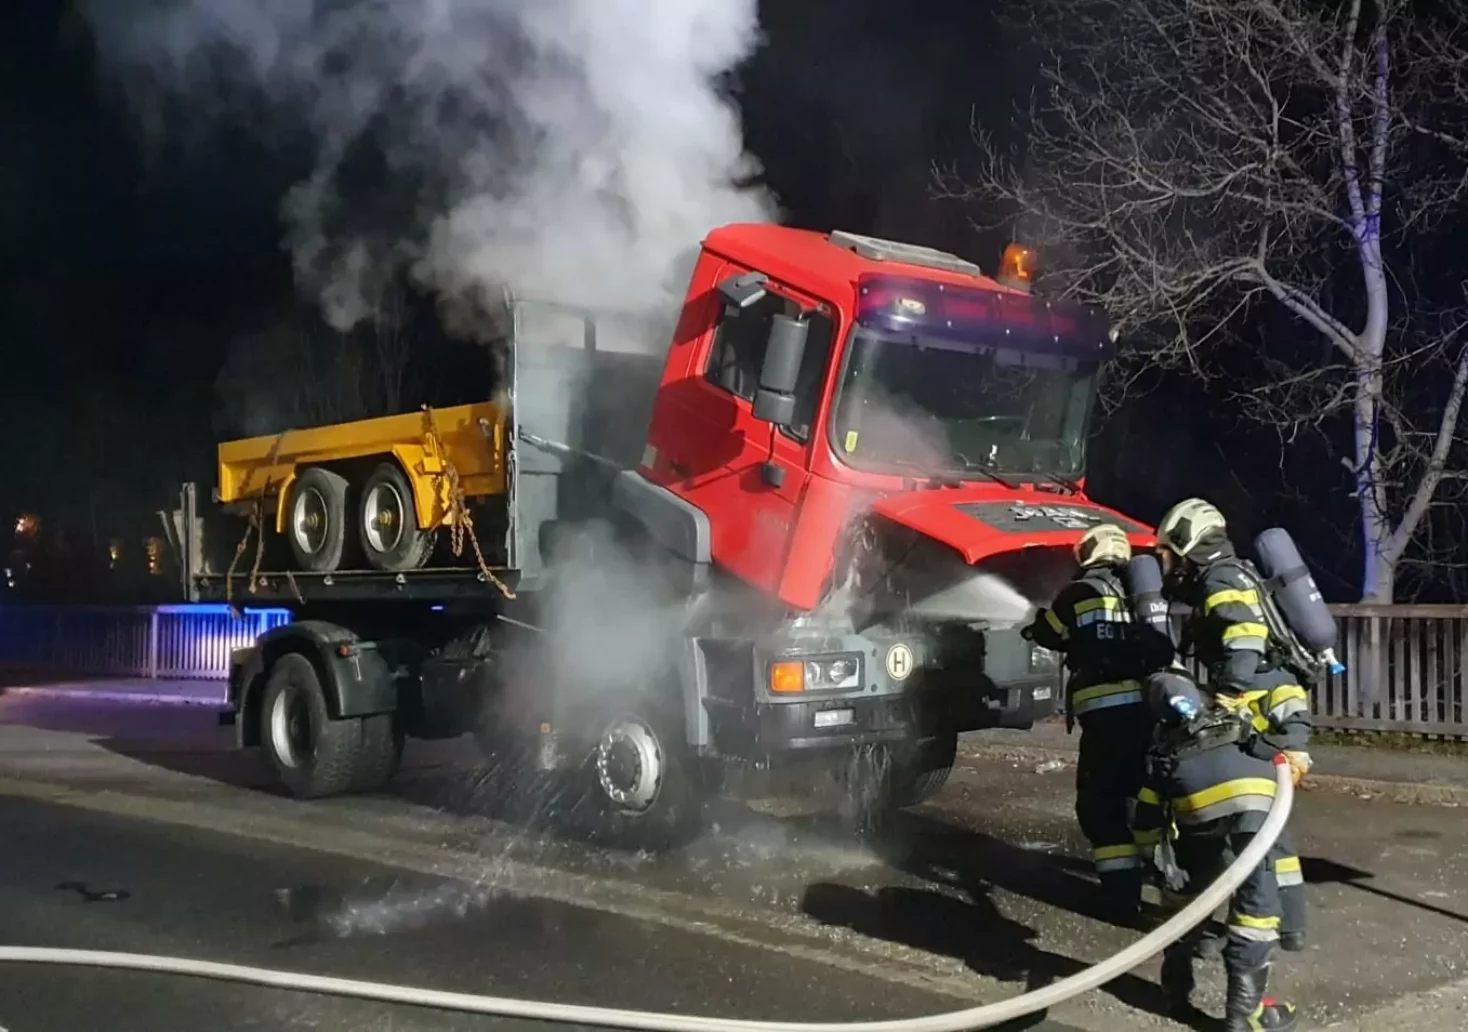 Schockmoment: Lastwagen fing während der Fahrt Feuer